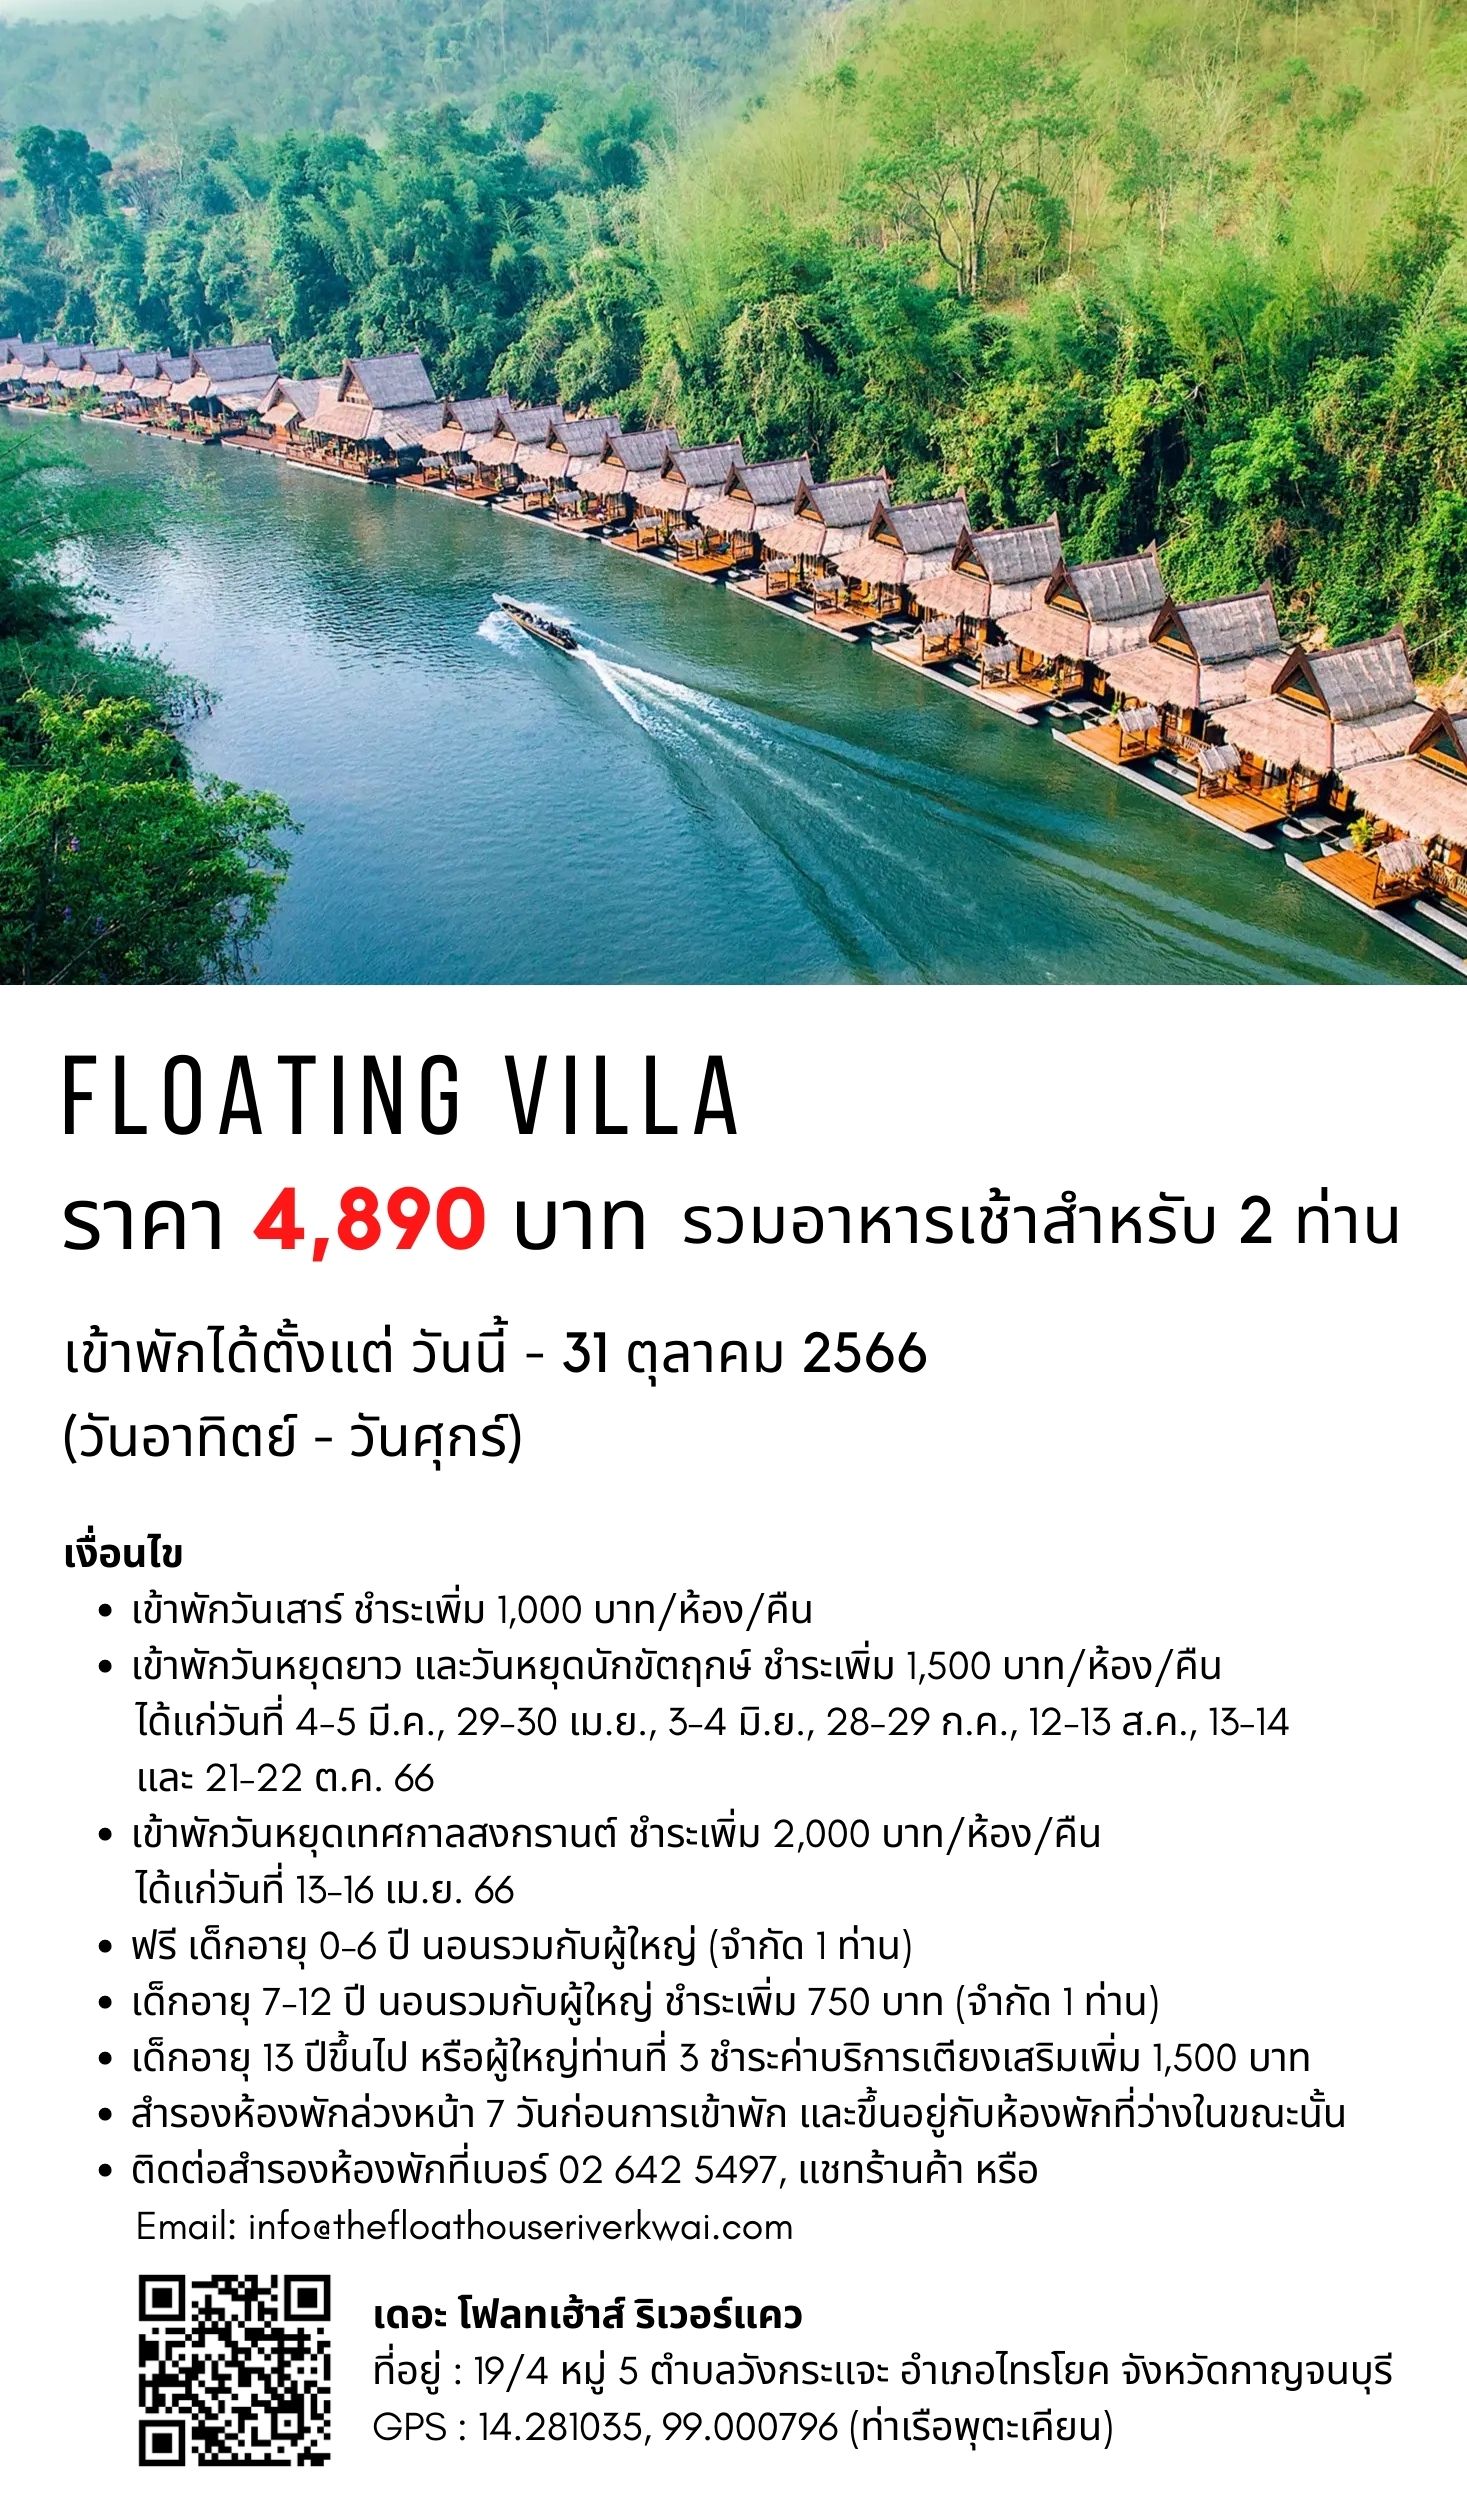 เกี่ยวกับ [E-vo] The Float House River Kwai, กาญจนบุรี - เข้าพักได้ถึง 31 ต.ค. 66 ห้อง Floating Villa 1 คืน พร้อมอาหารเช้า 2 ท่าน